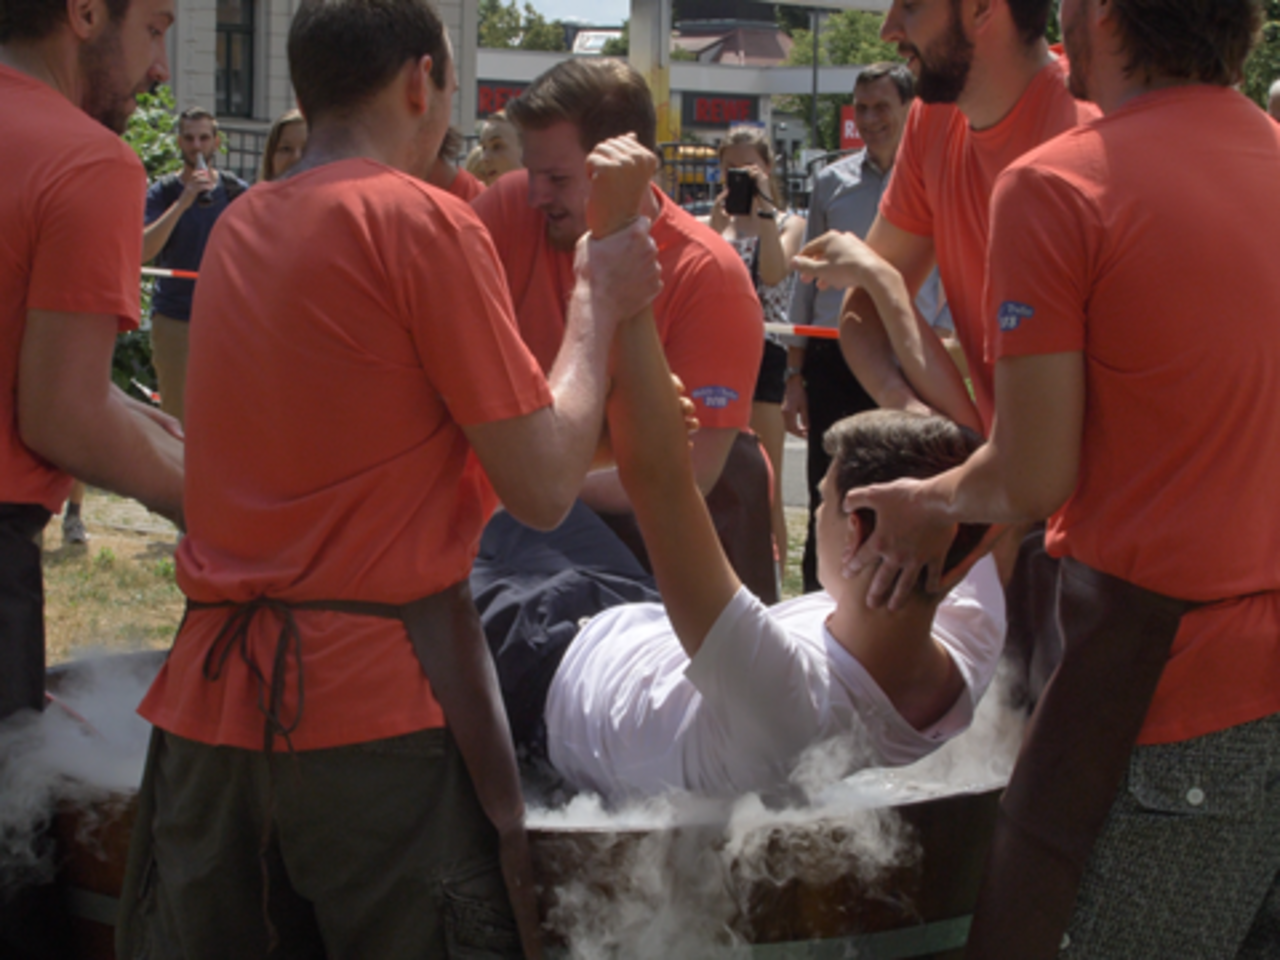 Studierenden tauchen einen weiteren Studenten in ein mit Wasser gefülltes Fass. Sie feiern das Gautschfest.